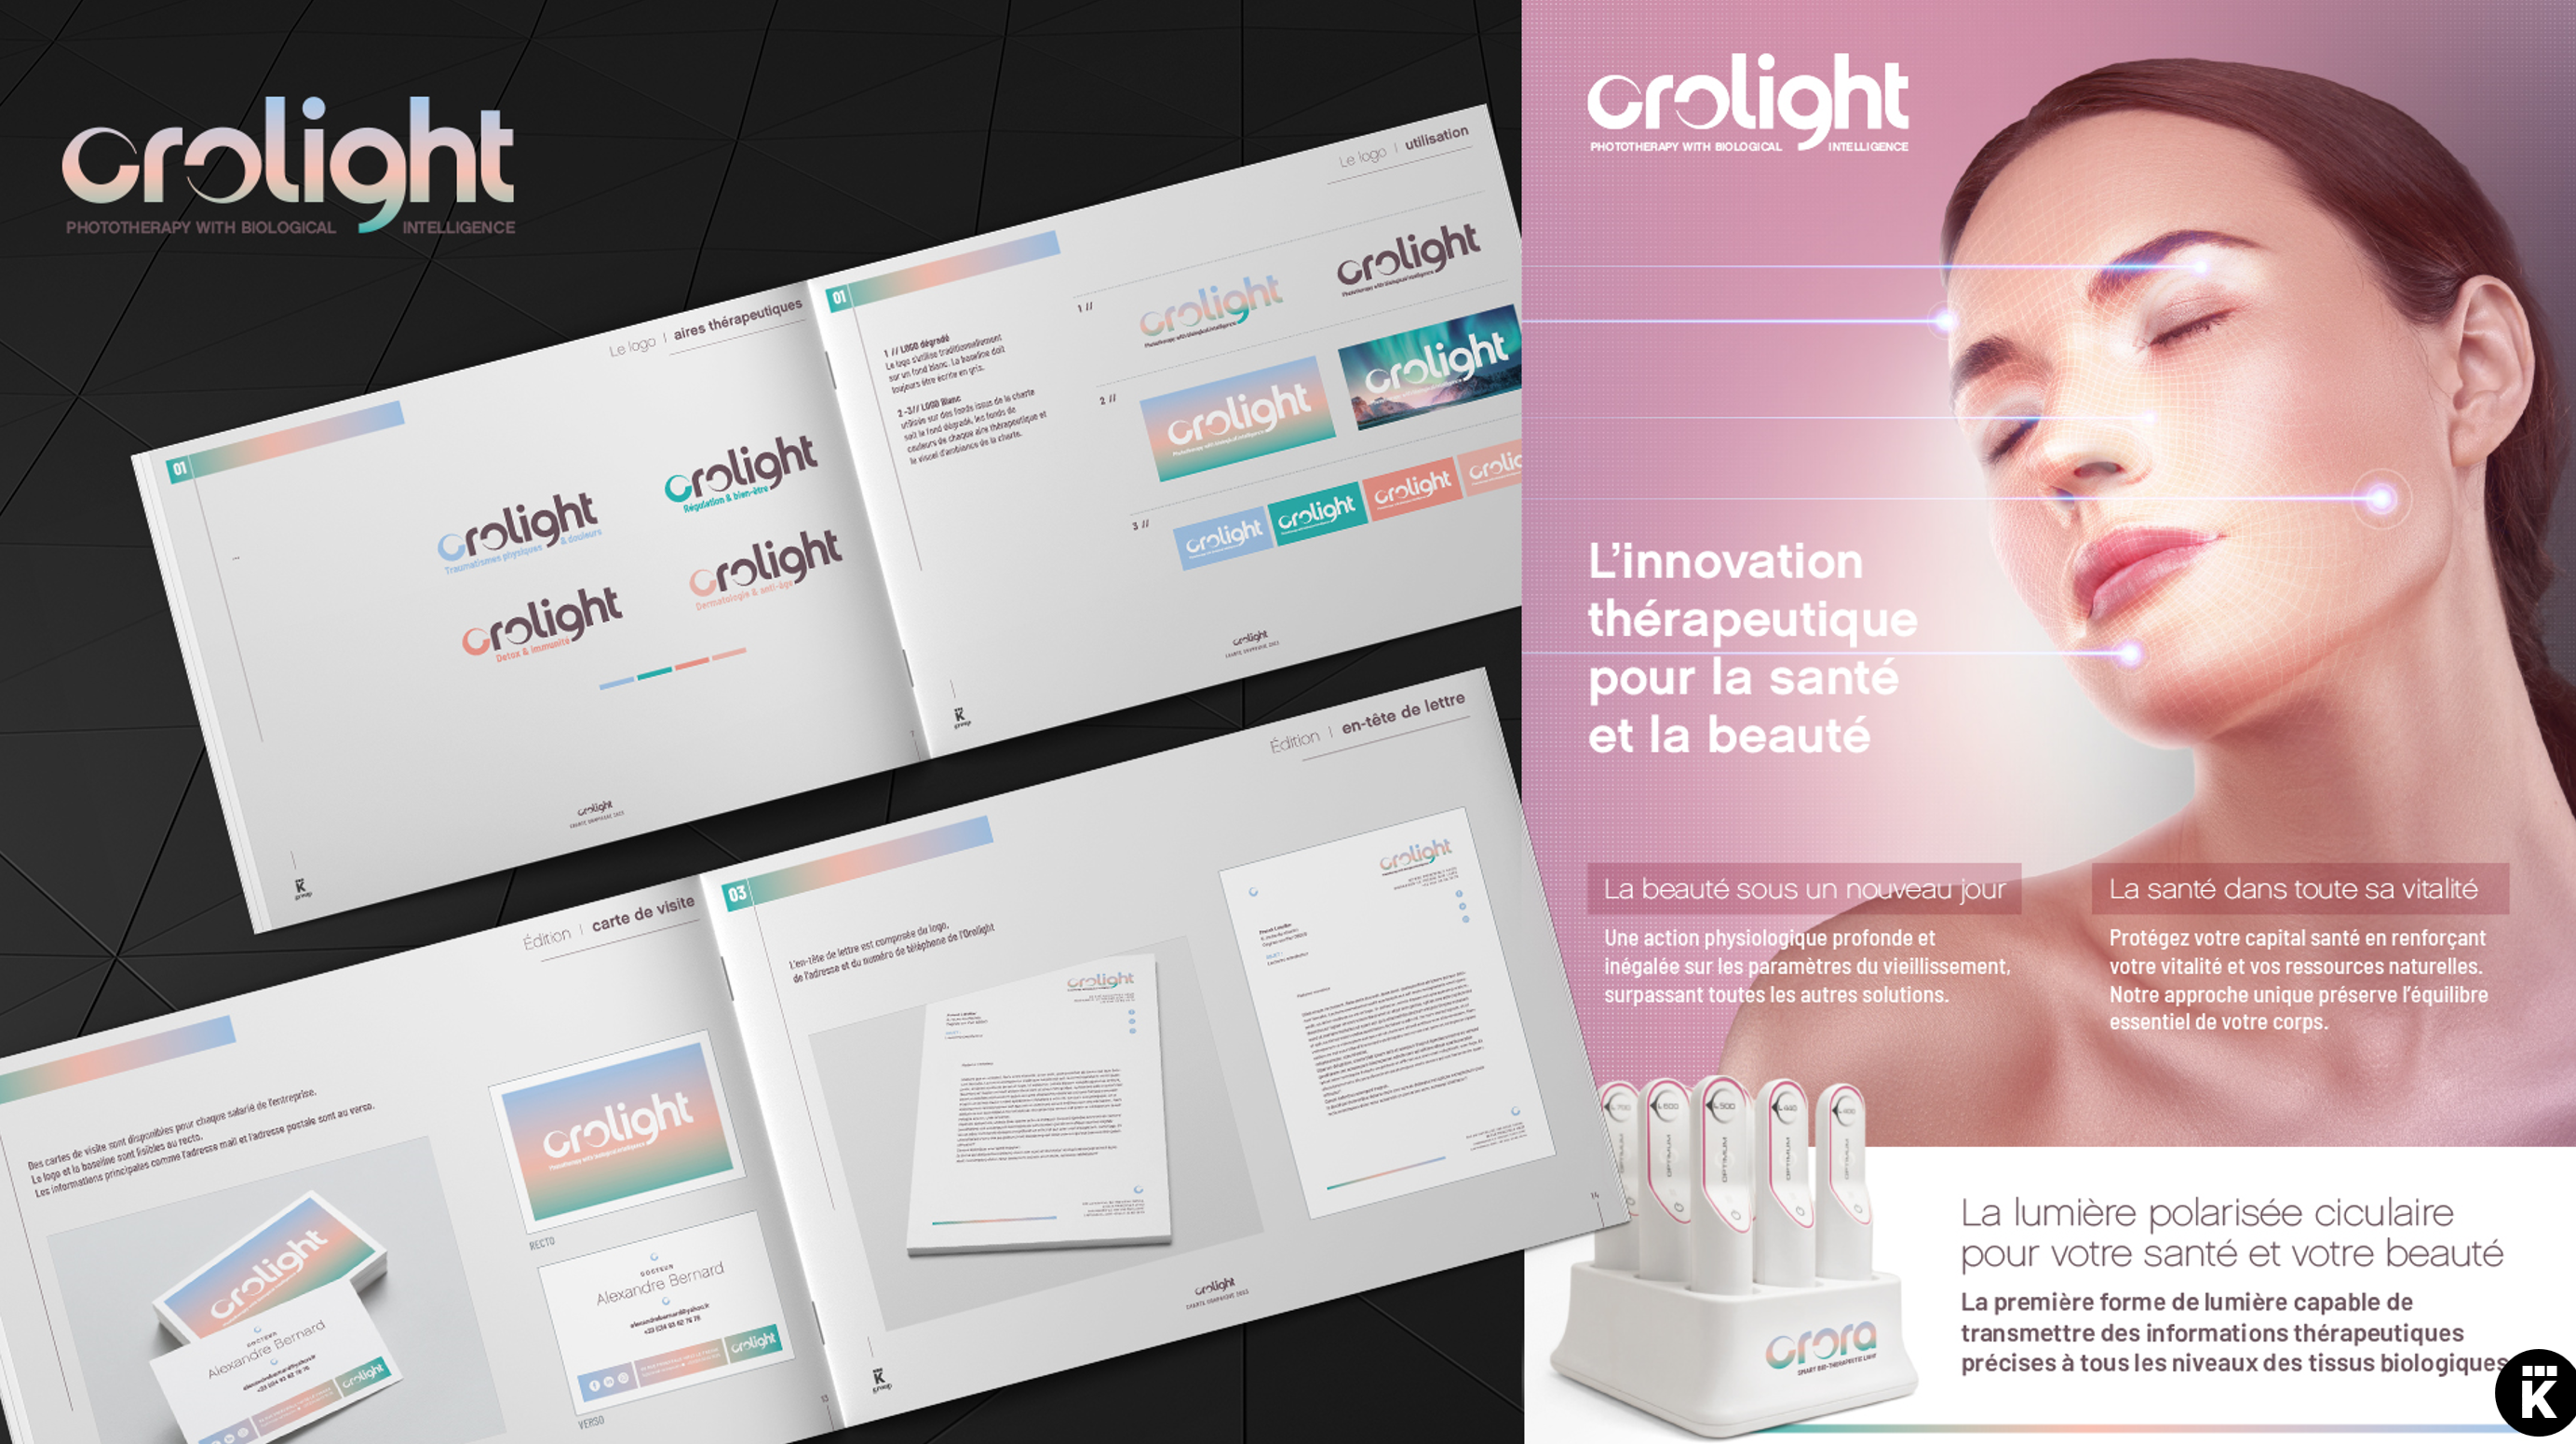 orolight référence créative stratégie de marque